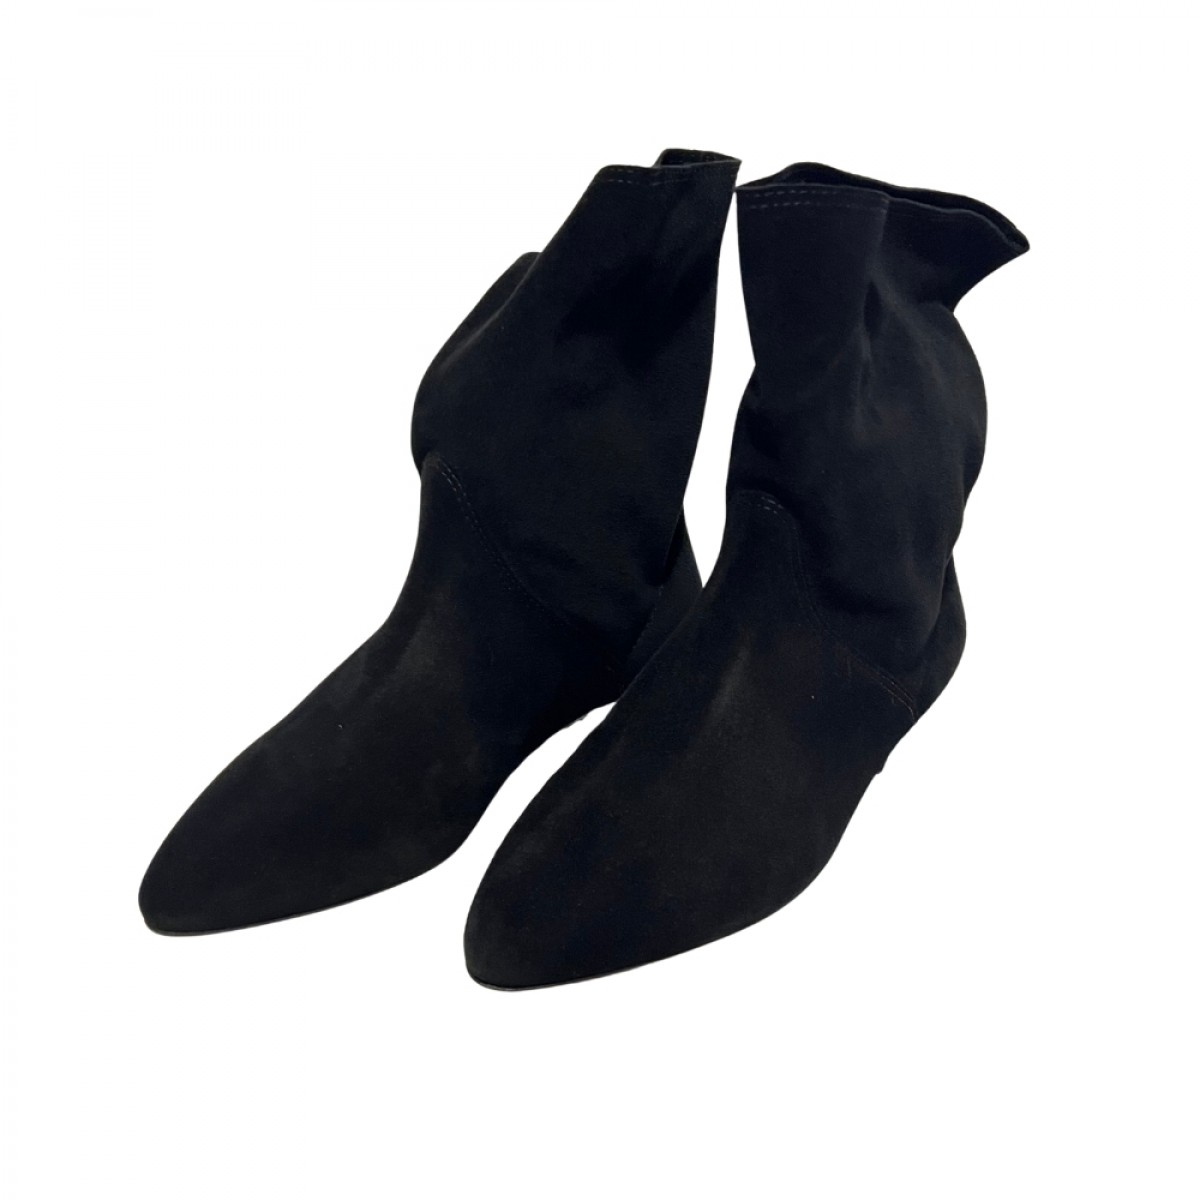 slaine boots - black - par